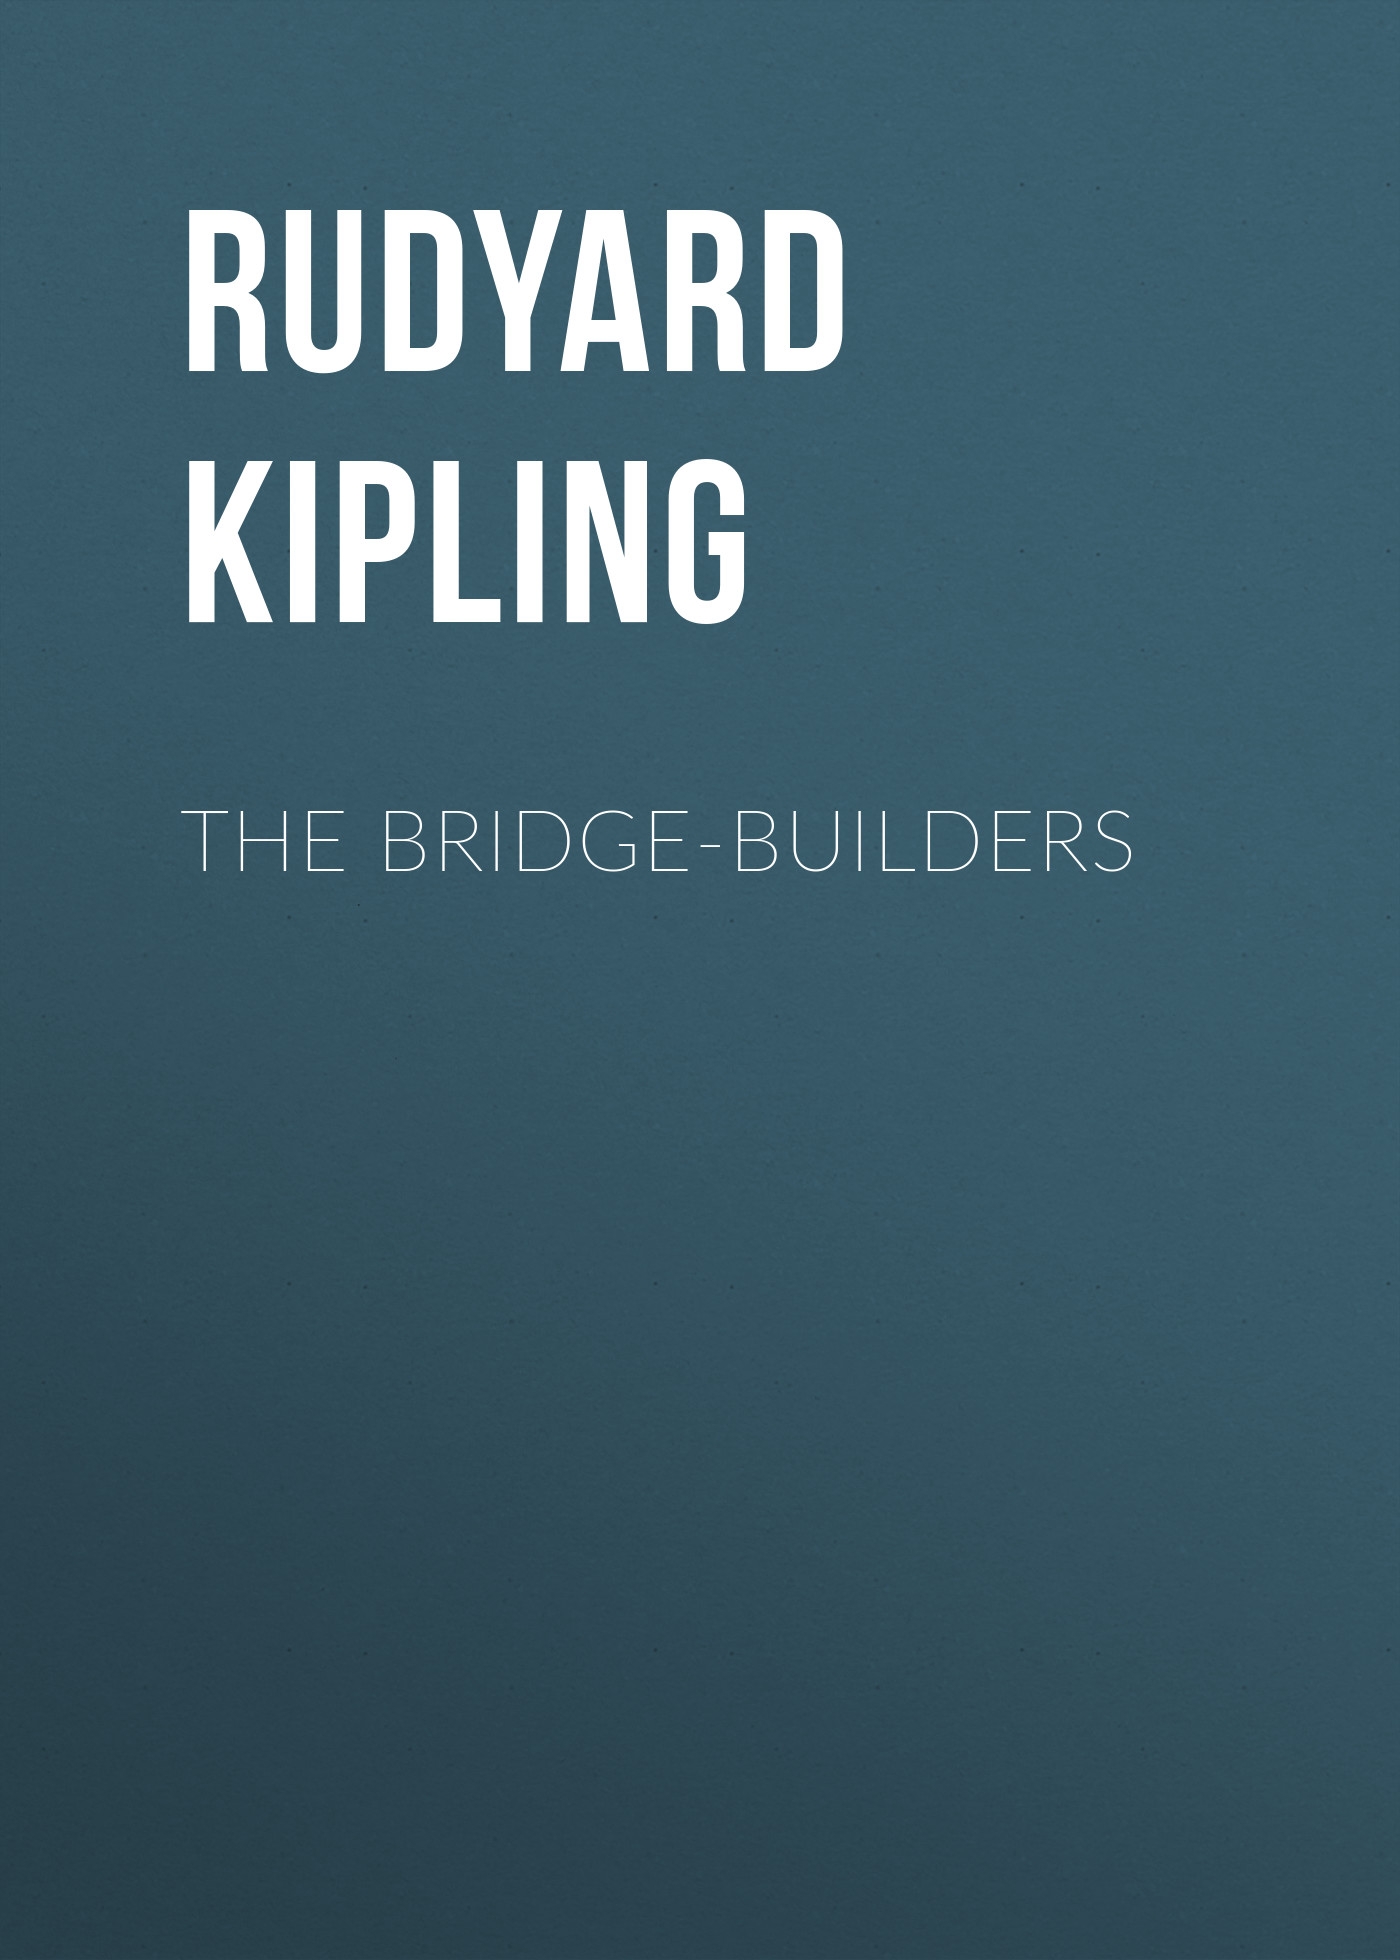 Книга The Bridge-Builders из серии , созданная Rudyard Kipling, может относится к жанру Литература 20 века, Классическая проза, Зарубежная старинная литература, Зарубежная классика. Стоимость электронной книги The Bridge-Builders с идентификатором 25229532 составляет 0 руб.